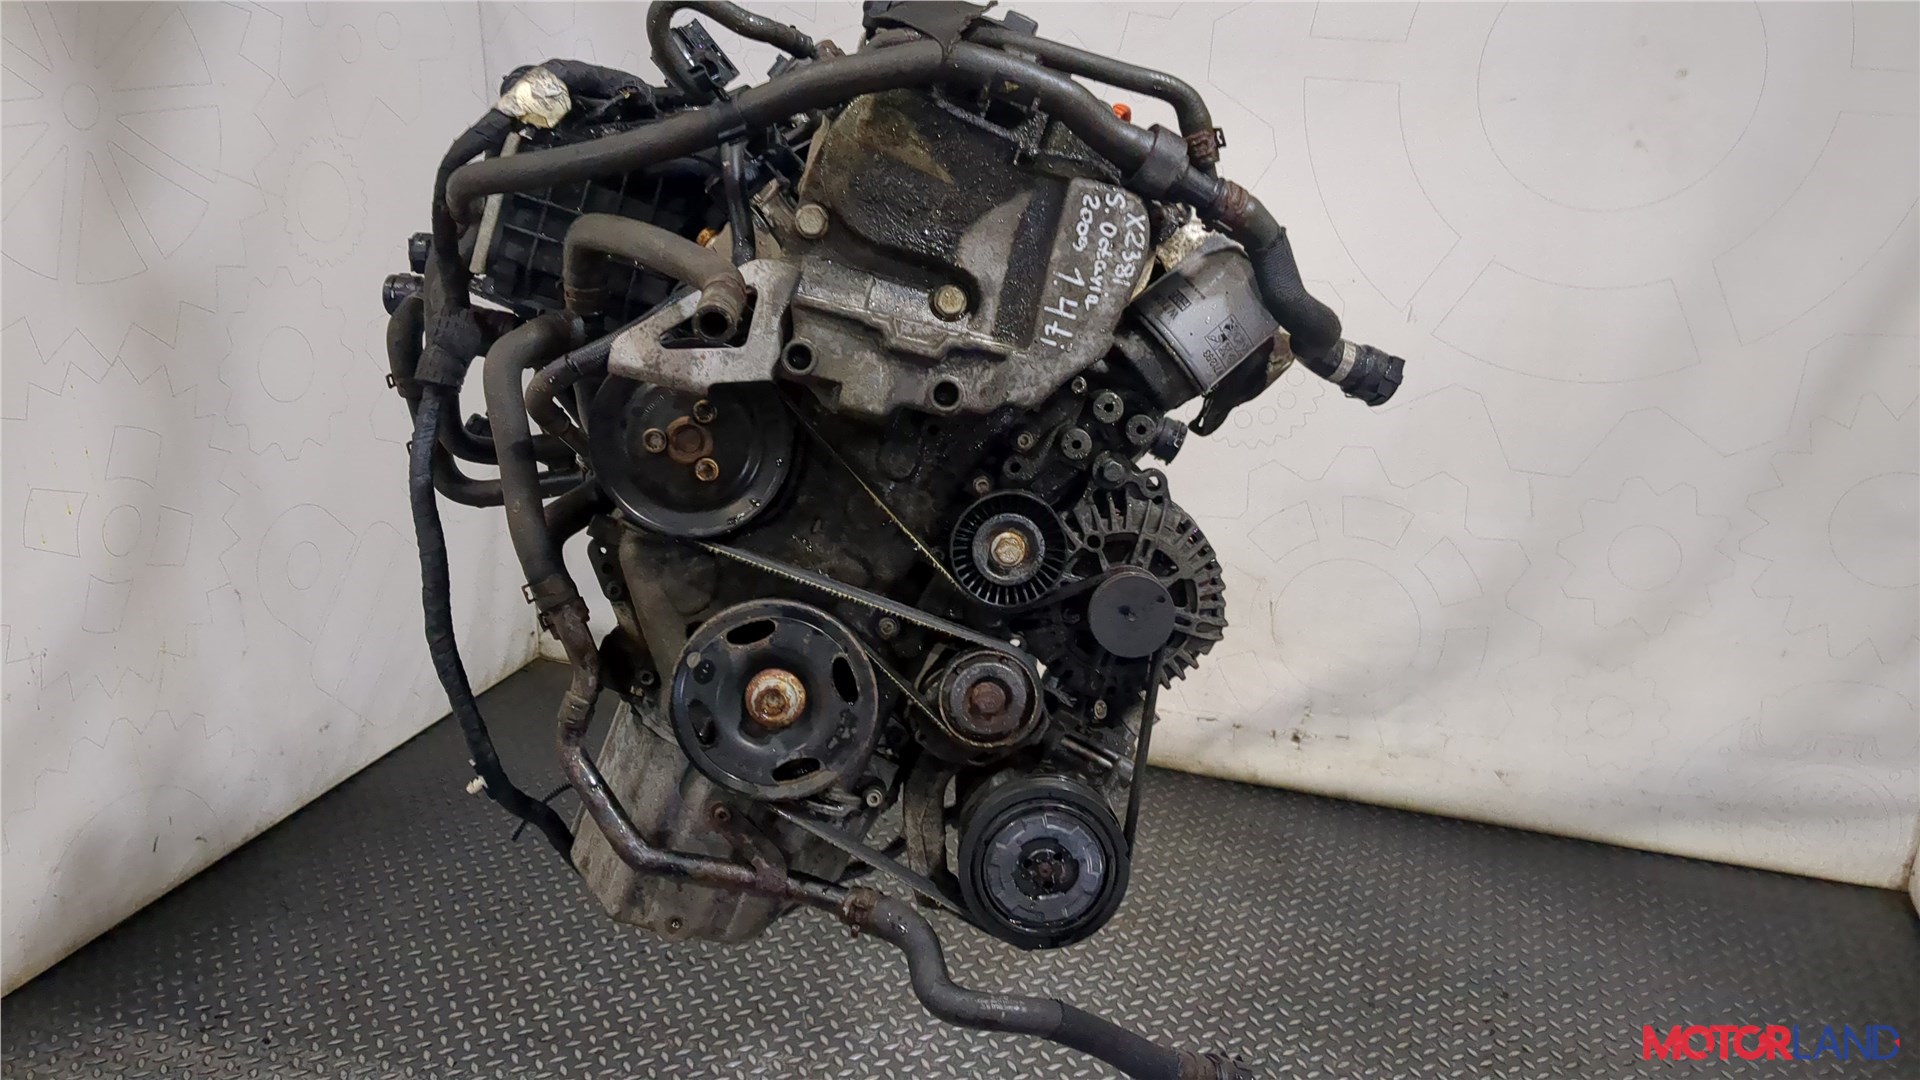 Какой двигатель у Skoda Octavia RS?